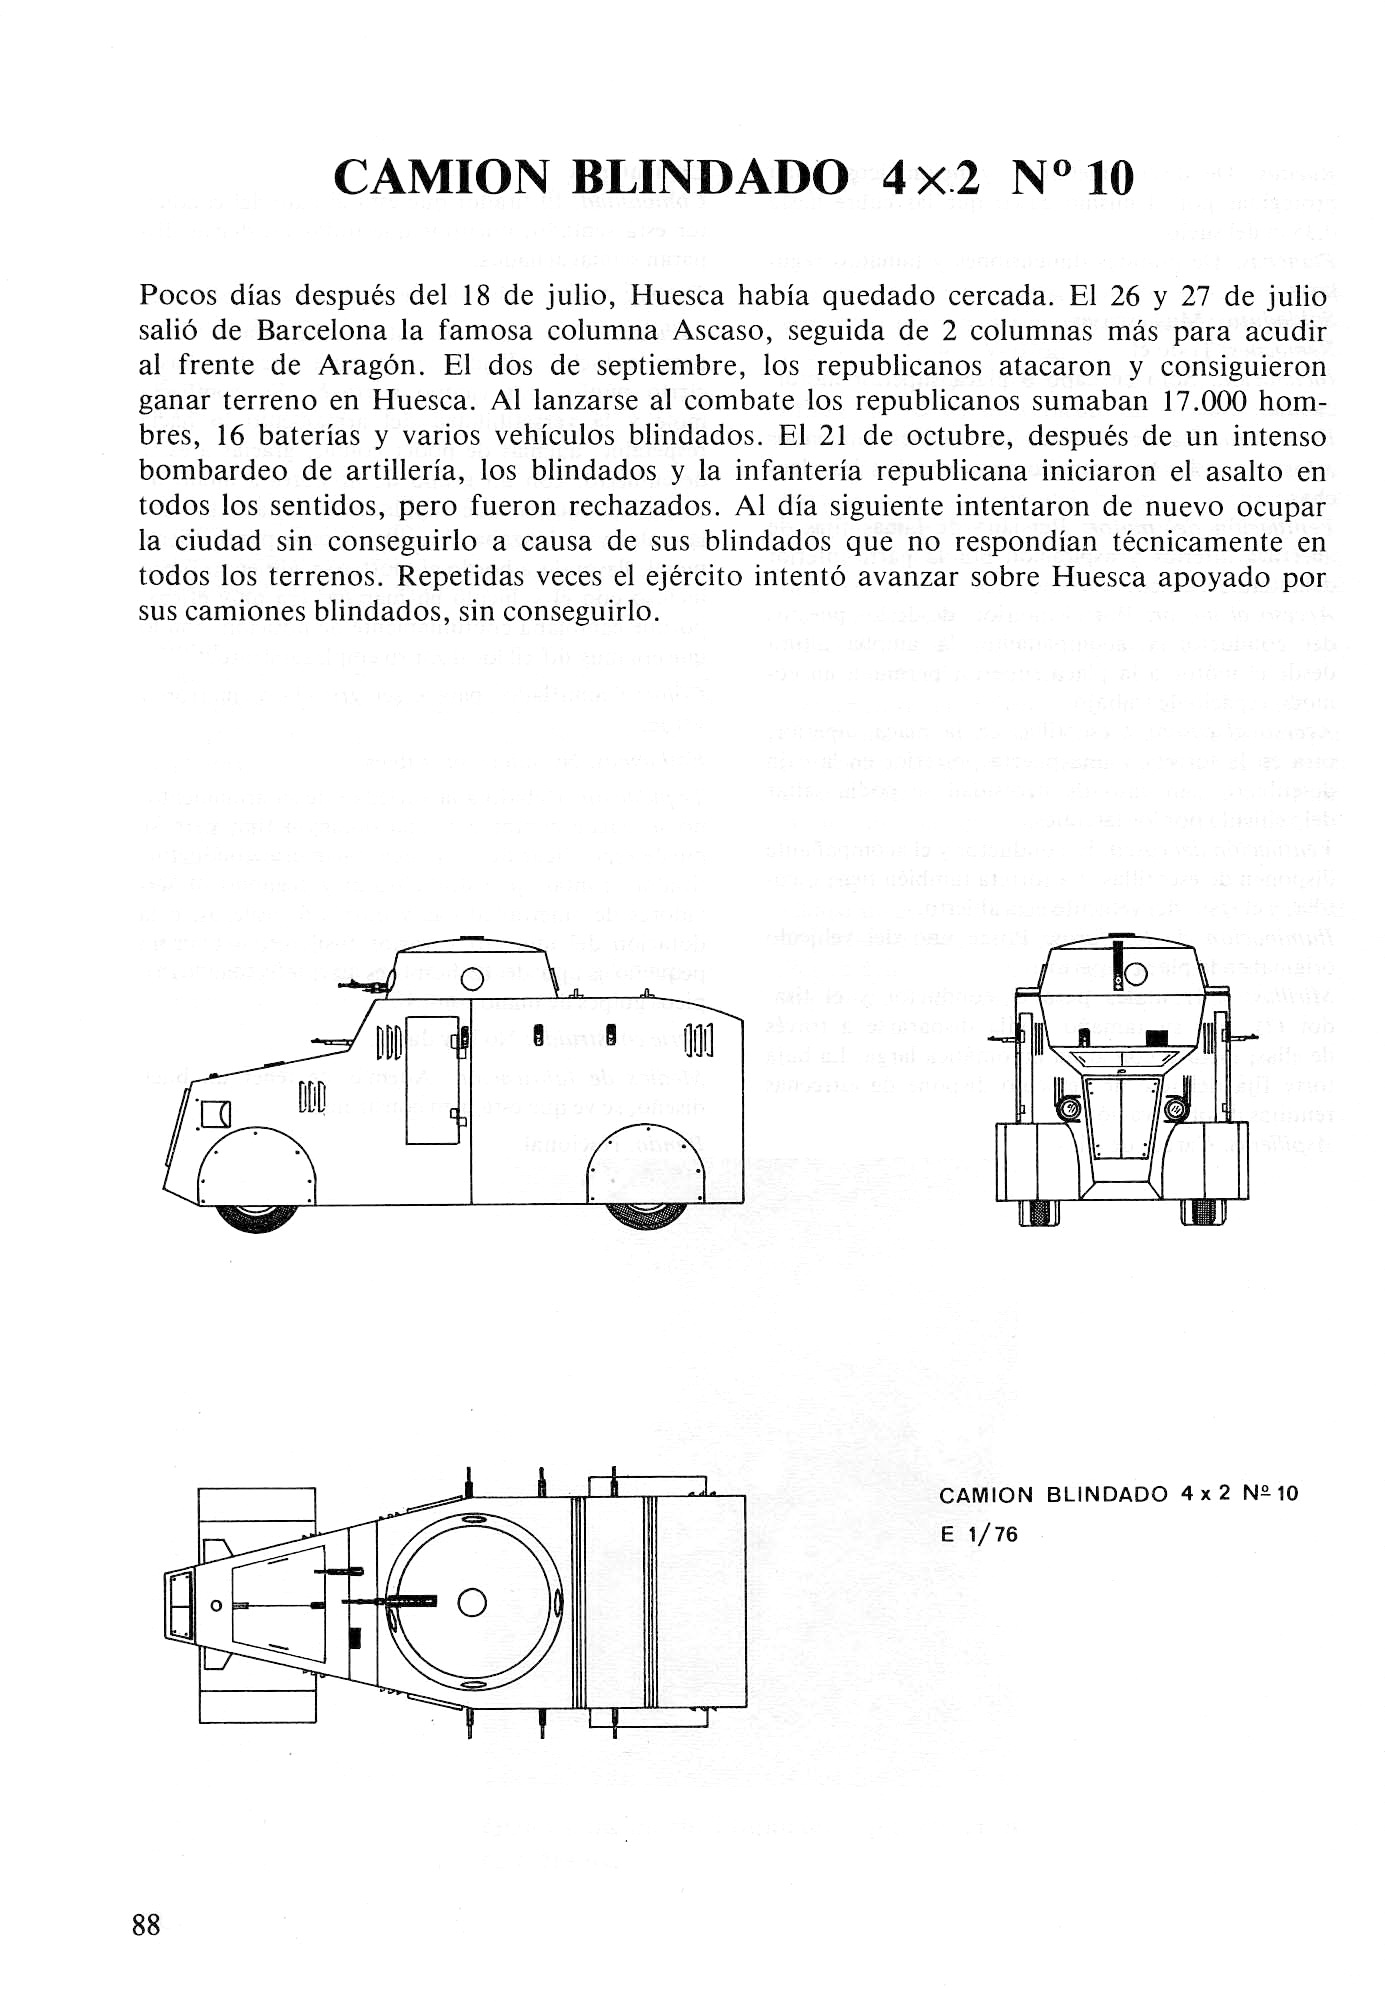 Carros De Combate Y Vehiculos Blindados De La Guerra 1936 1939 [F.C.Albert 1980]_Страница_086.jpg